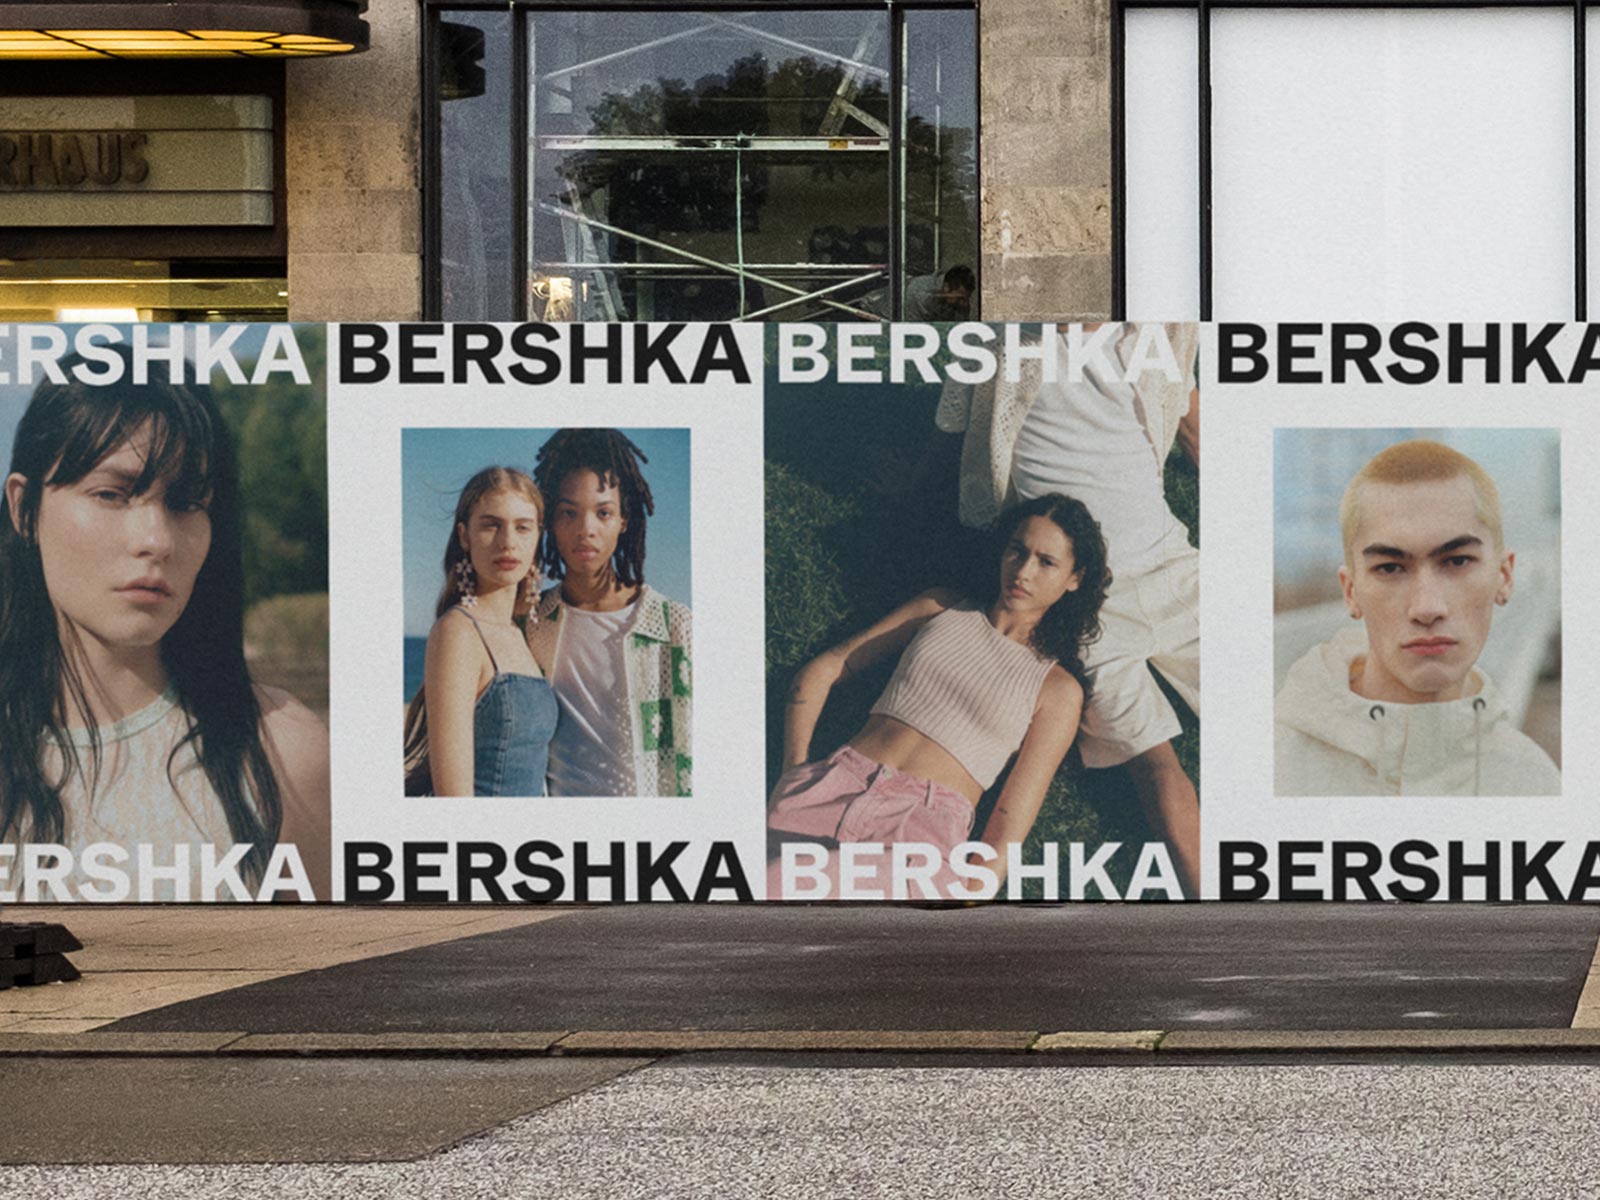 EXCLUSIVA: Bershka cumple 25 años y estrena nuevo logotipo